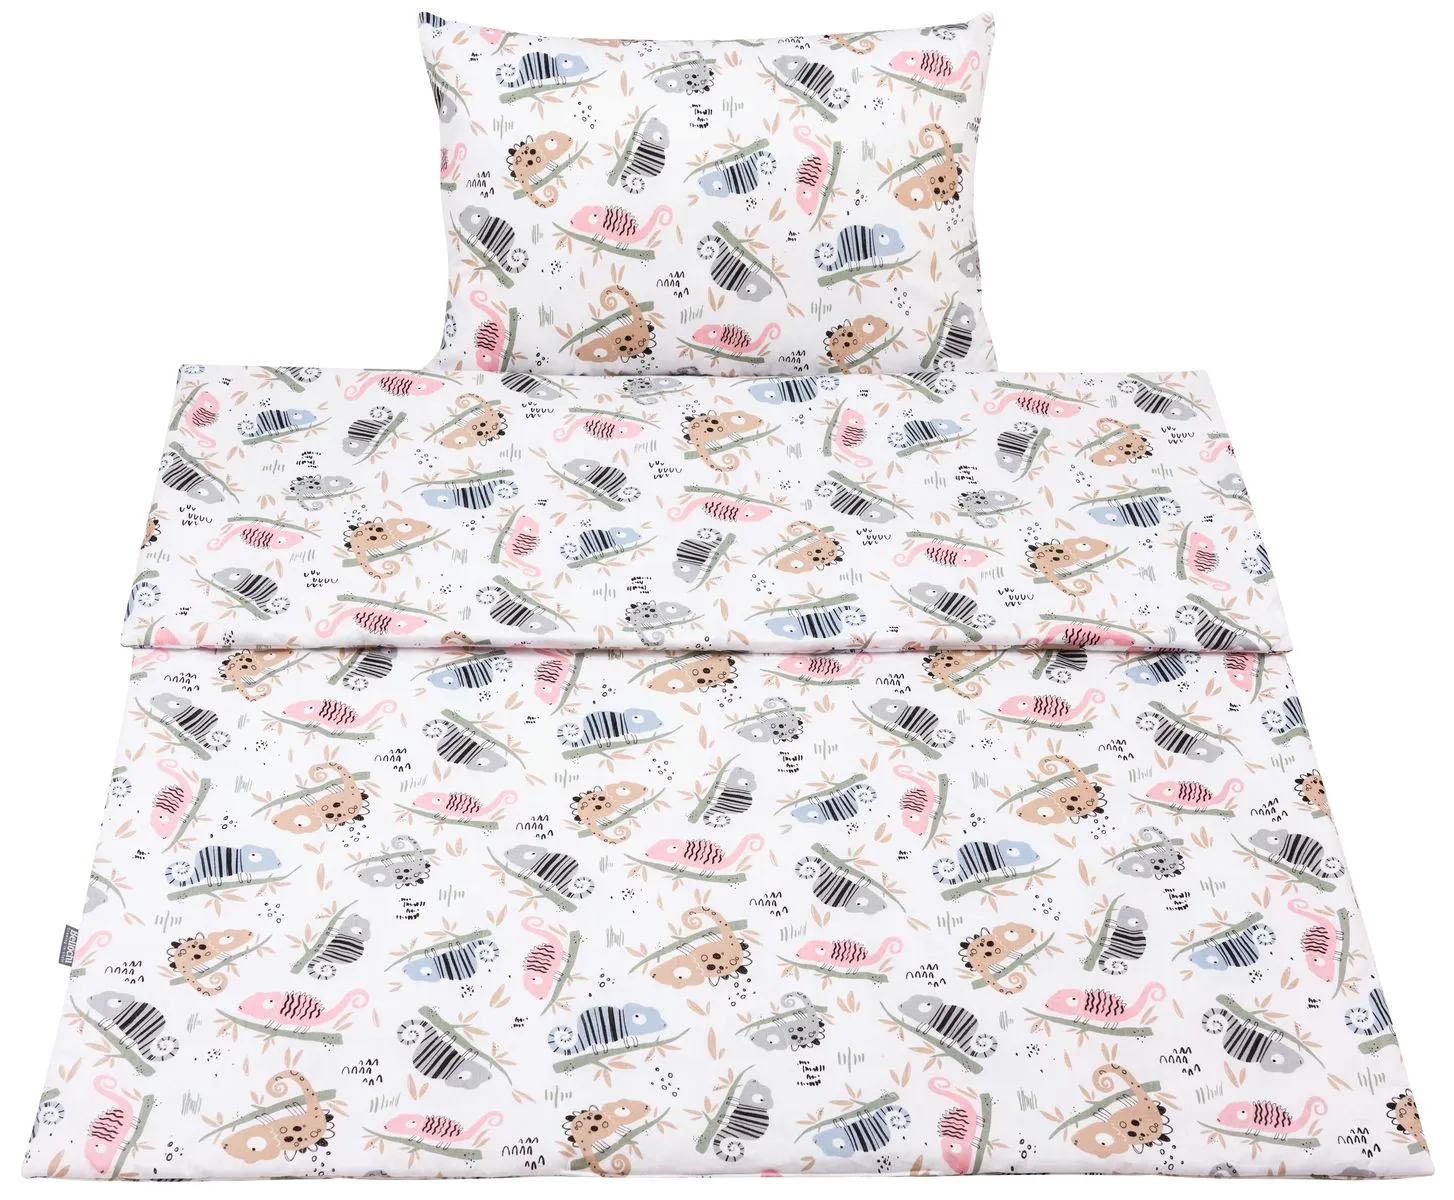 Baumwoll-Kleinkinderbettwäsche 2-teiliges Set, Kinderbettbezug 135×100 cm und Kissenbezug 60×40 cm, chameleon habits